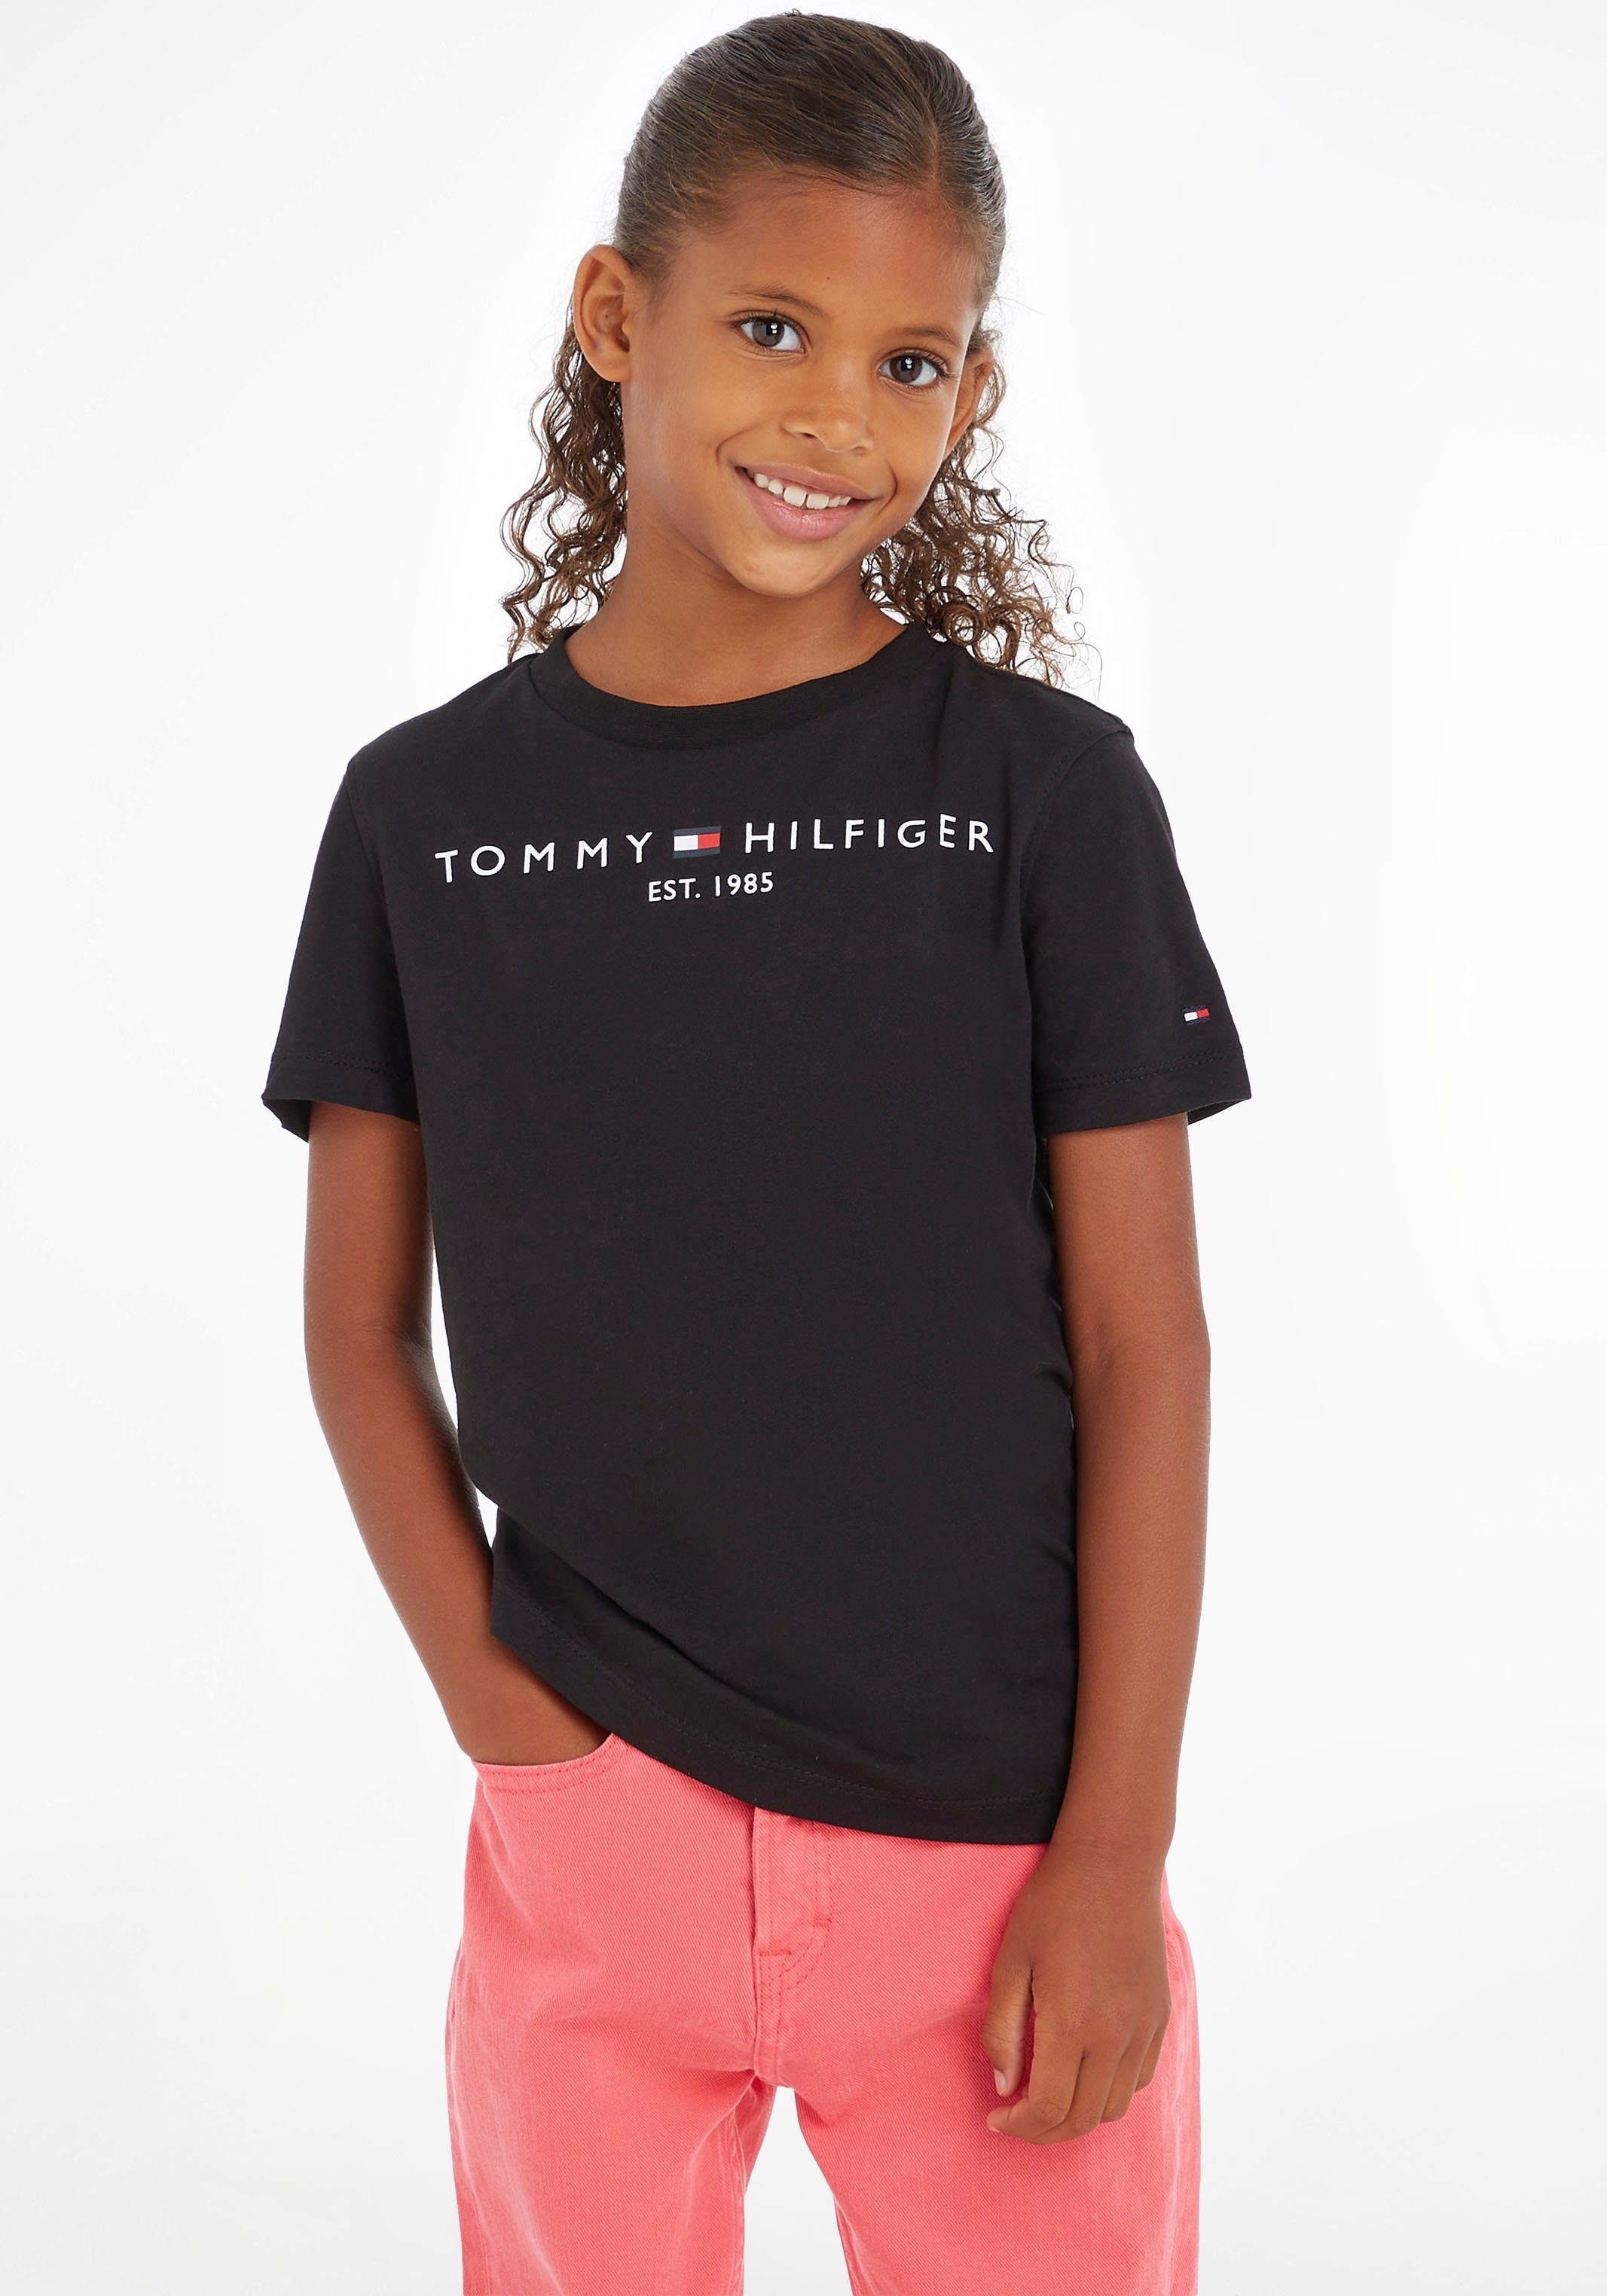 ESSENTIAL TEE (Bio-Baumwolle) Hilfiger Jungen Single aus für Baumwolle Reiner und Jersey Mädchen, Tommy T-Shirt